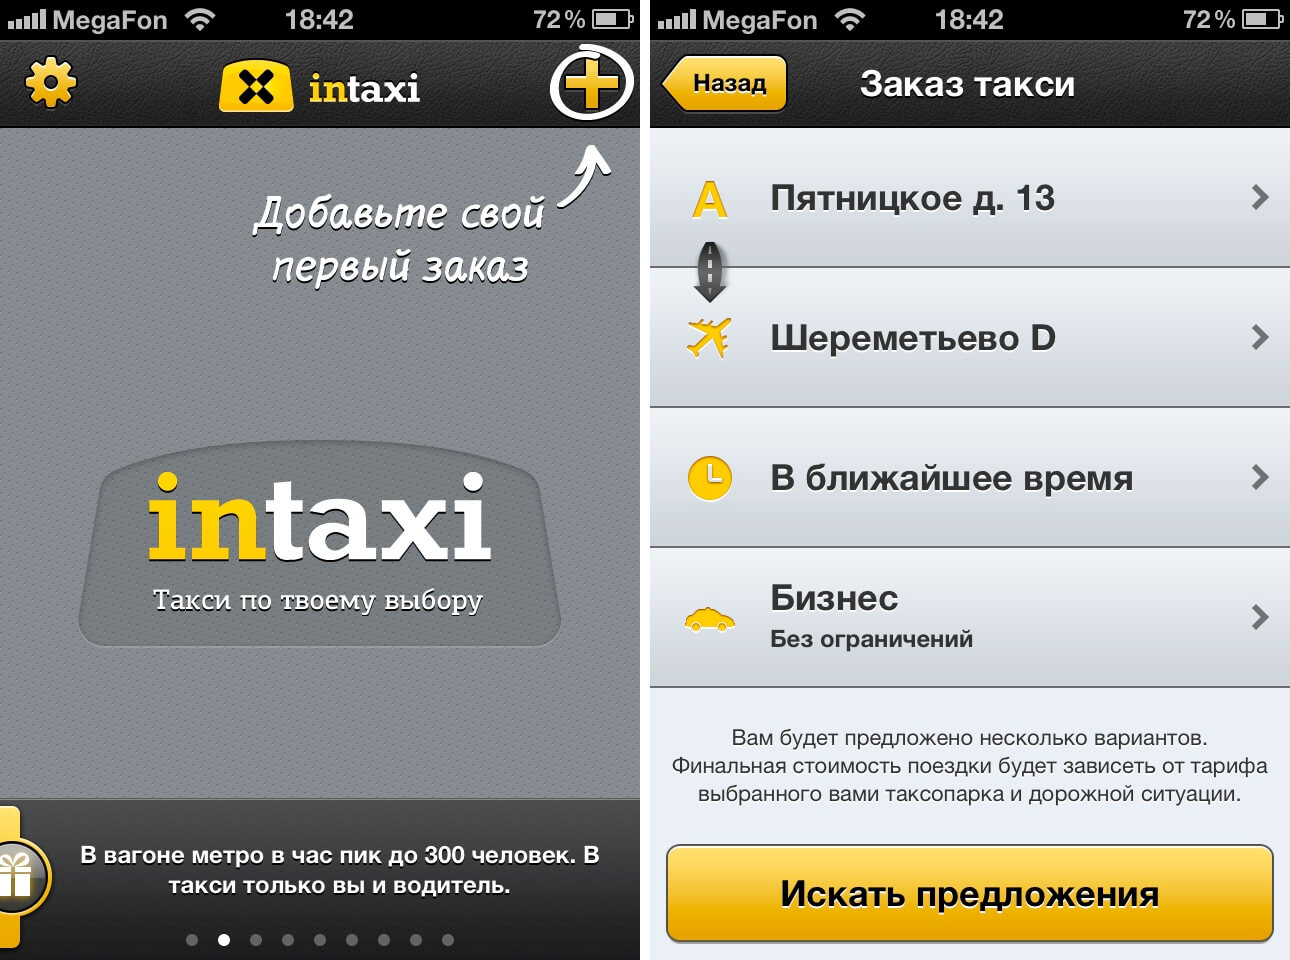 Такси api для разработчиков. Приложение такси. Программа "такси". Такси приложение для водителей. Интерфейс приложения такси для водителей.